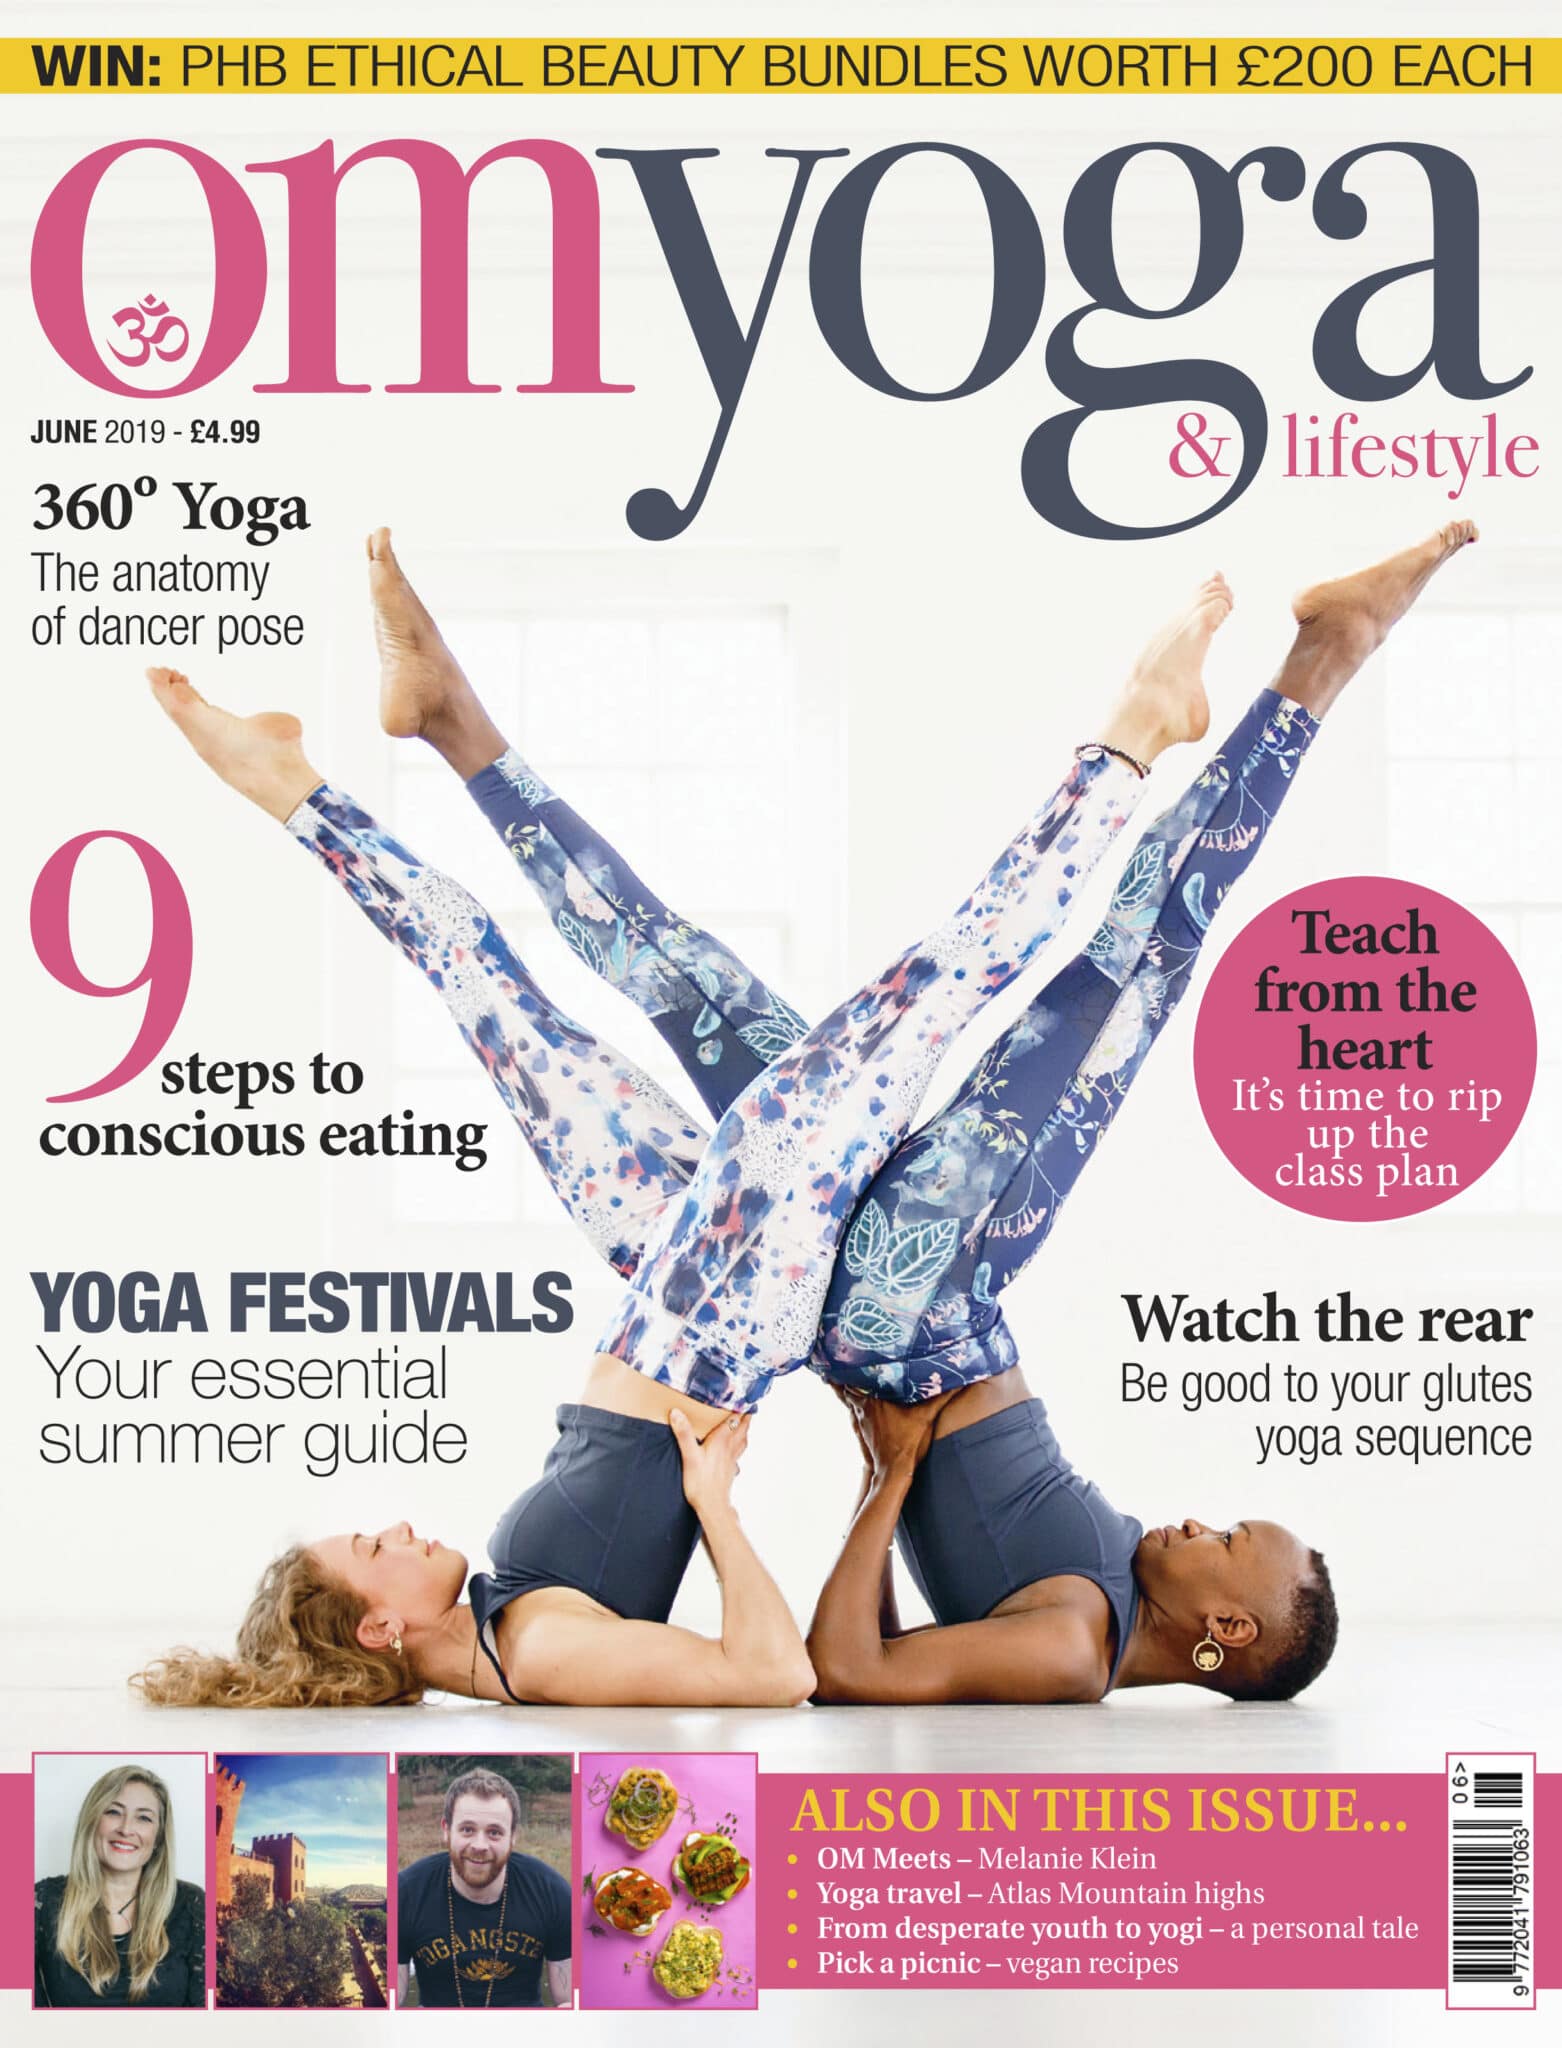 6-yoga-poses-for-beginners.jpg